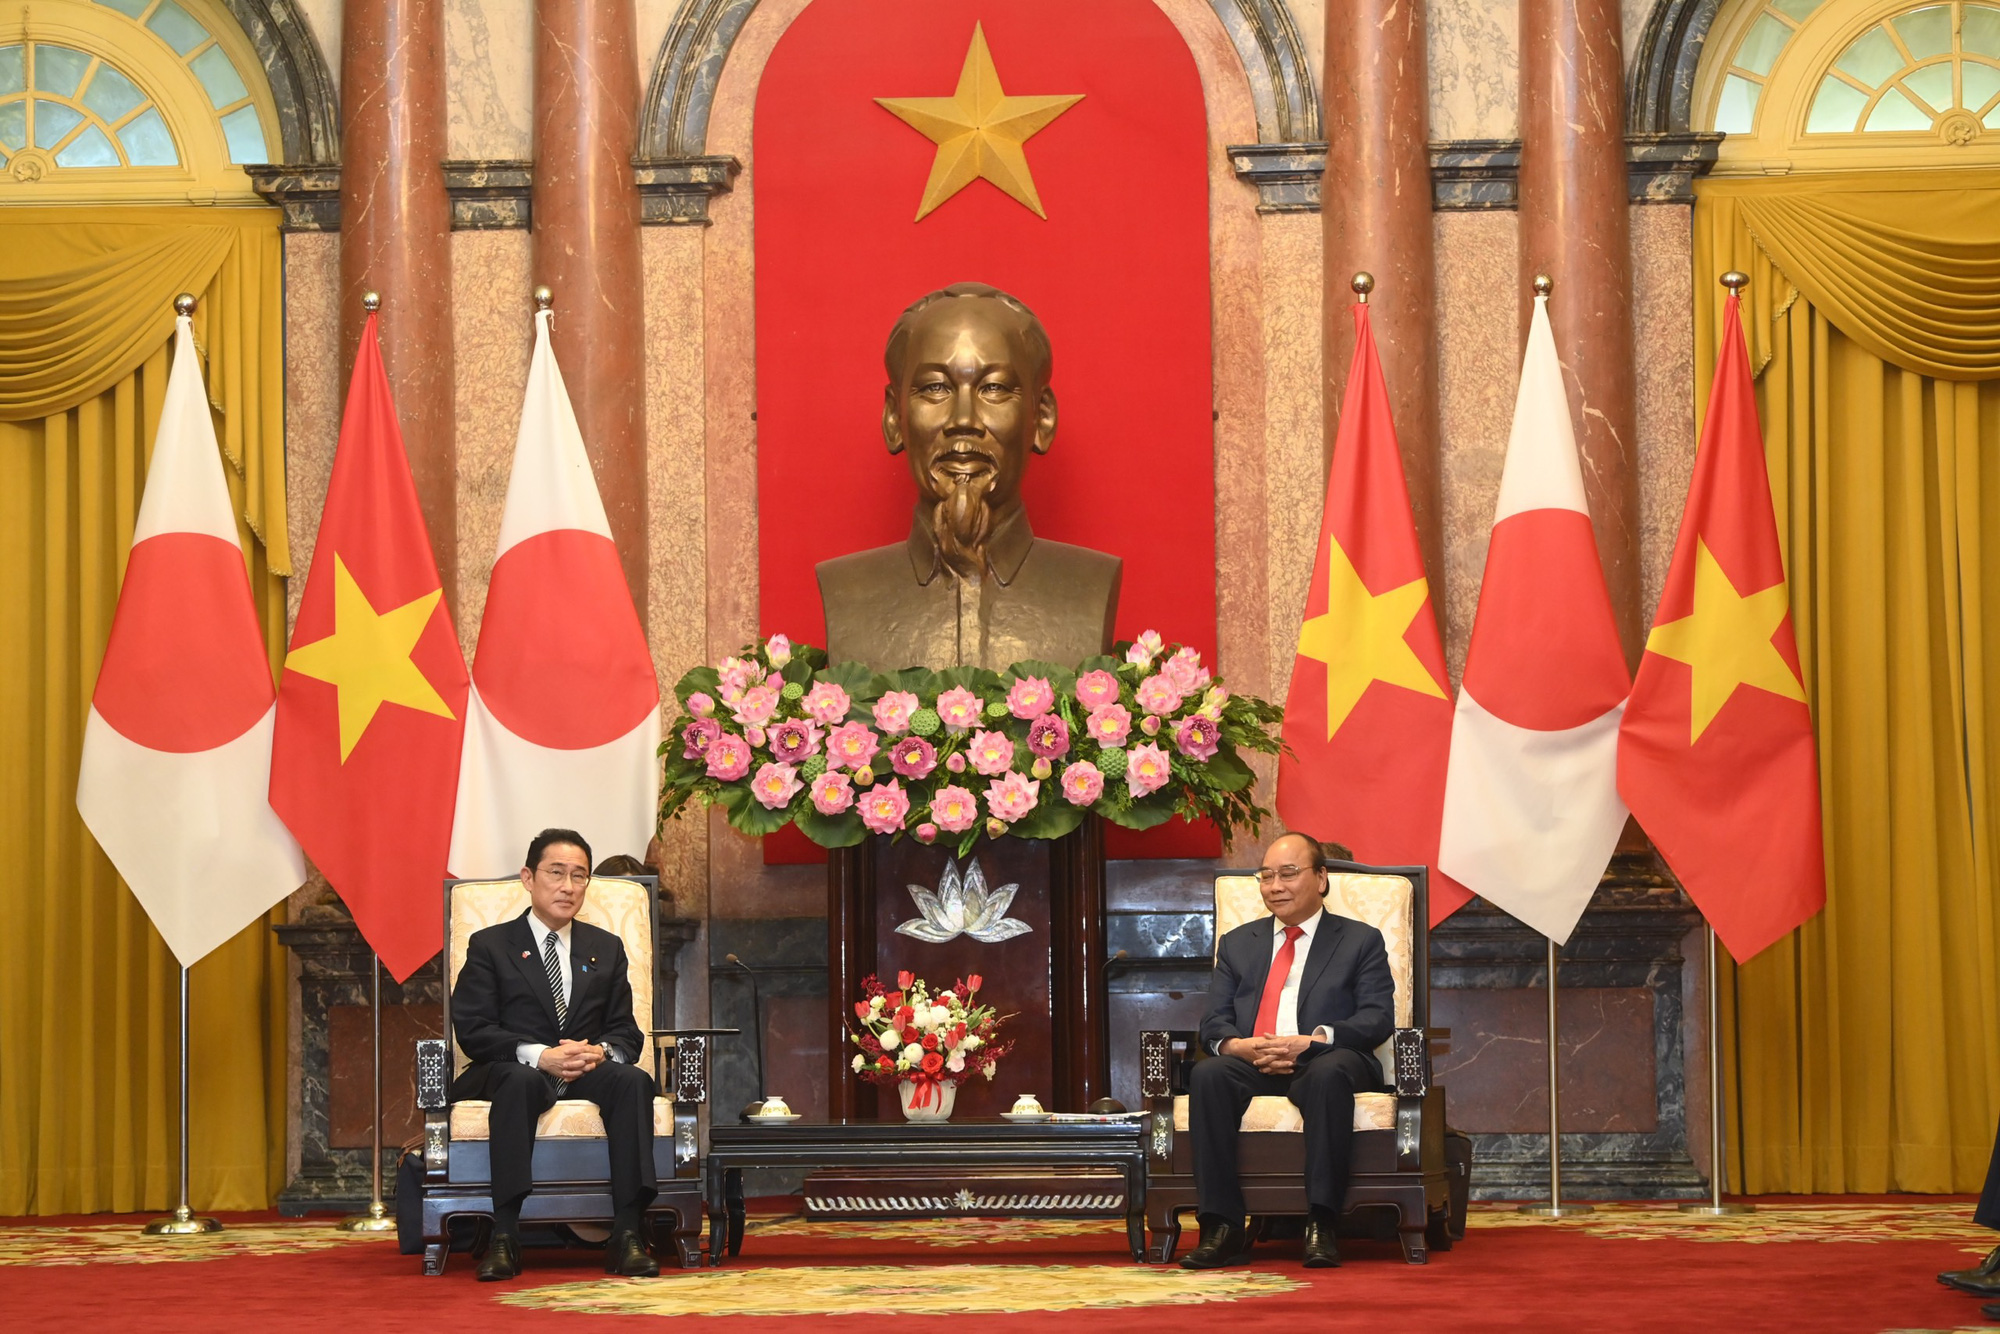 Thủ tướng Nhật Bản: Thủ tướng Nhật Bản đã làm việc tích cực để nâng cao quan hệ giữa Nhật Bản và Việt Nam. Hãy xem hình ảnh của ông để hiểu thêm về các chính sách và những cống hiến của ông cho đất nước Nhật Bản. Đồng thời, cũng hiểu thêm về những hợp tác quan trọng giữa hai quốc gia.